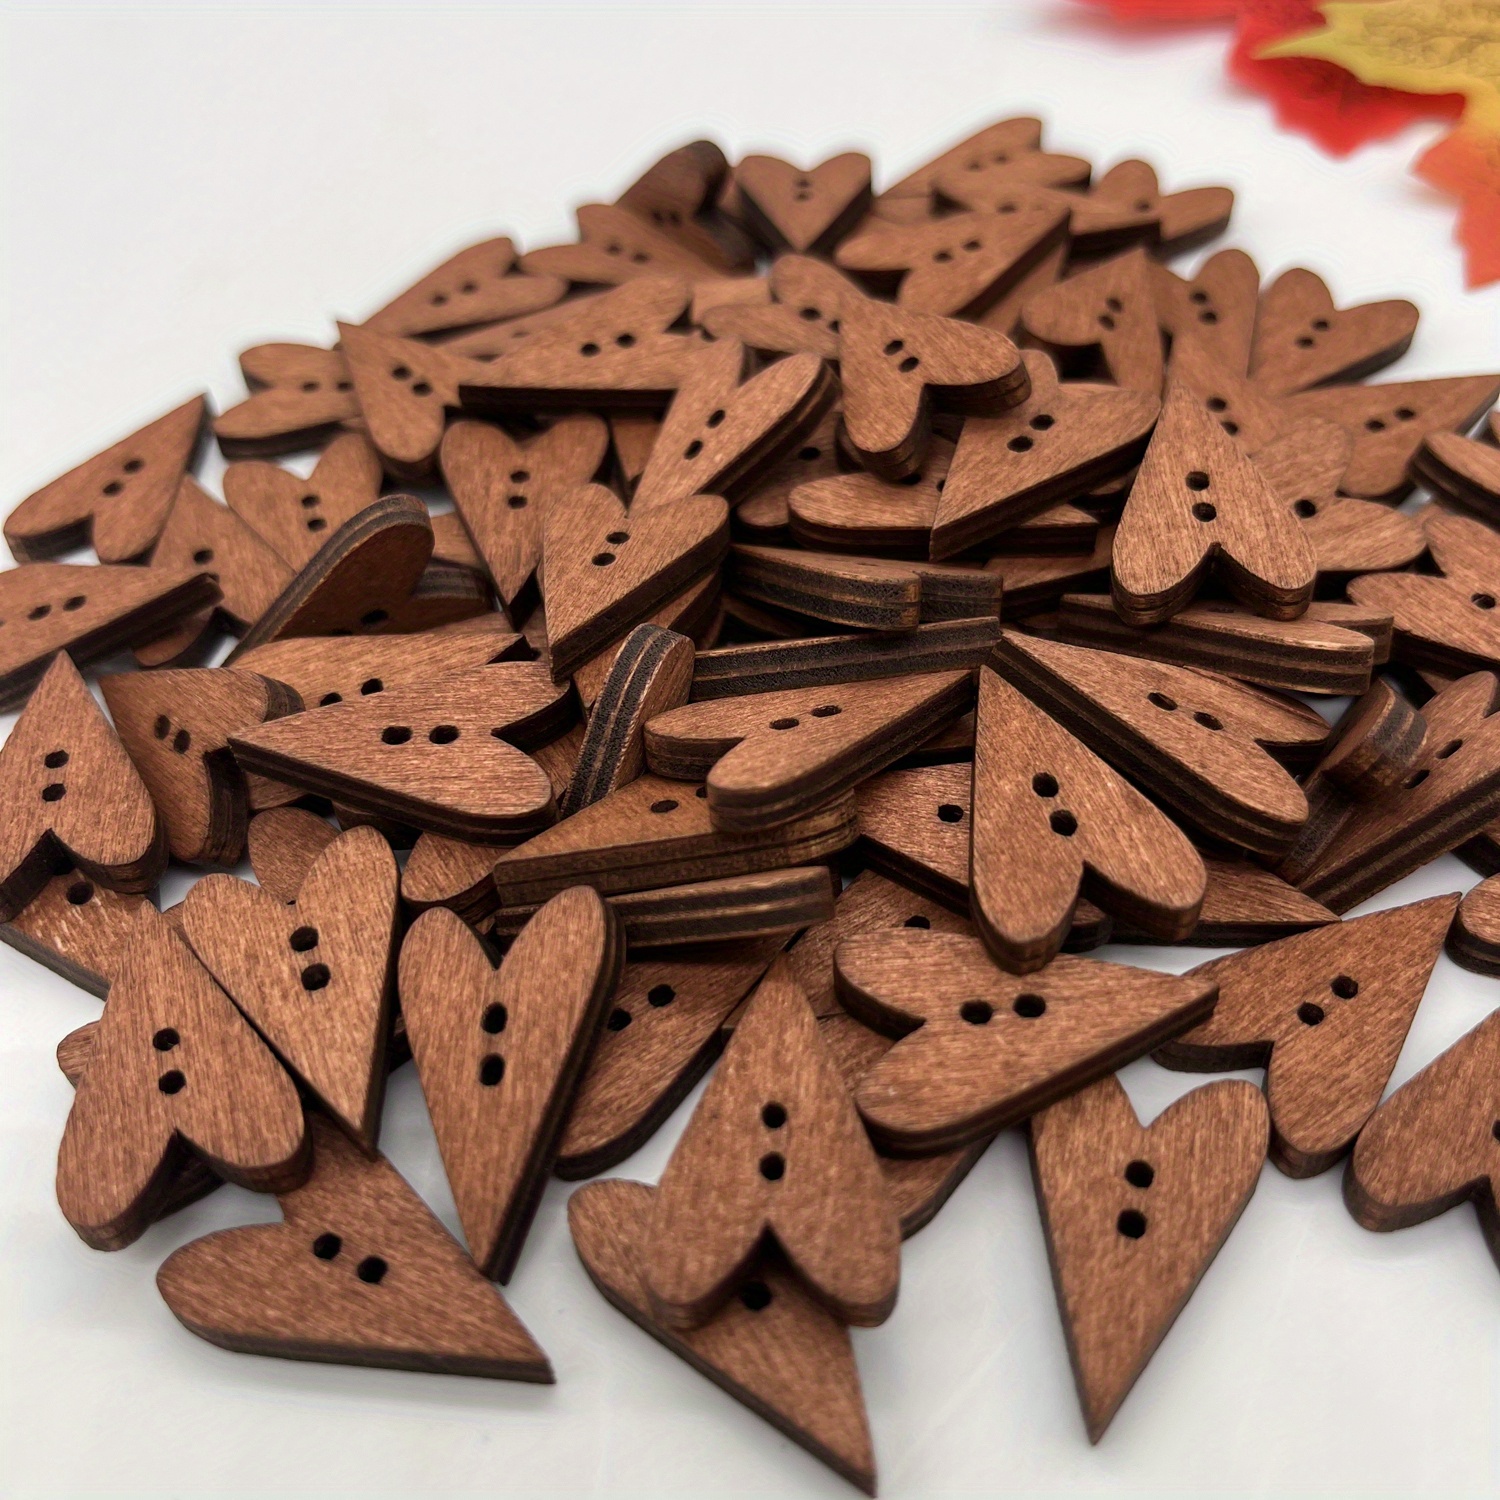 100Pcs Bulk Heart Buttons for Crafts Wooden Heart Craft Buttons Wood Button  for Sewing DIY Crafts 2-Hole Retro Cute(Peach Heart)